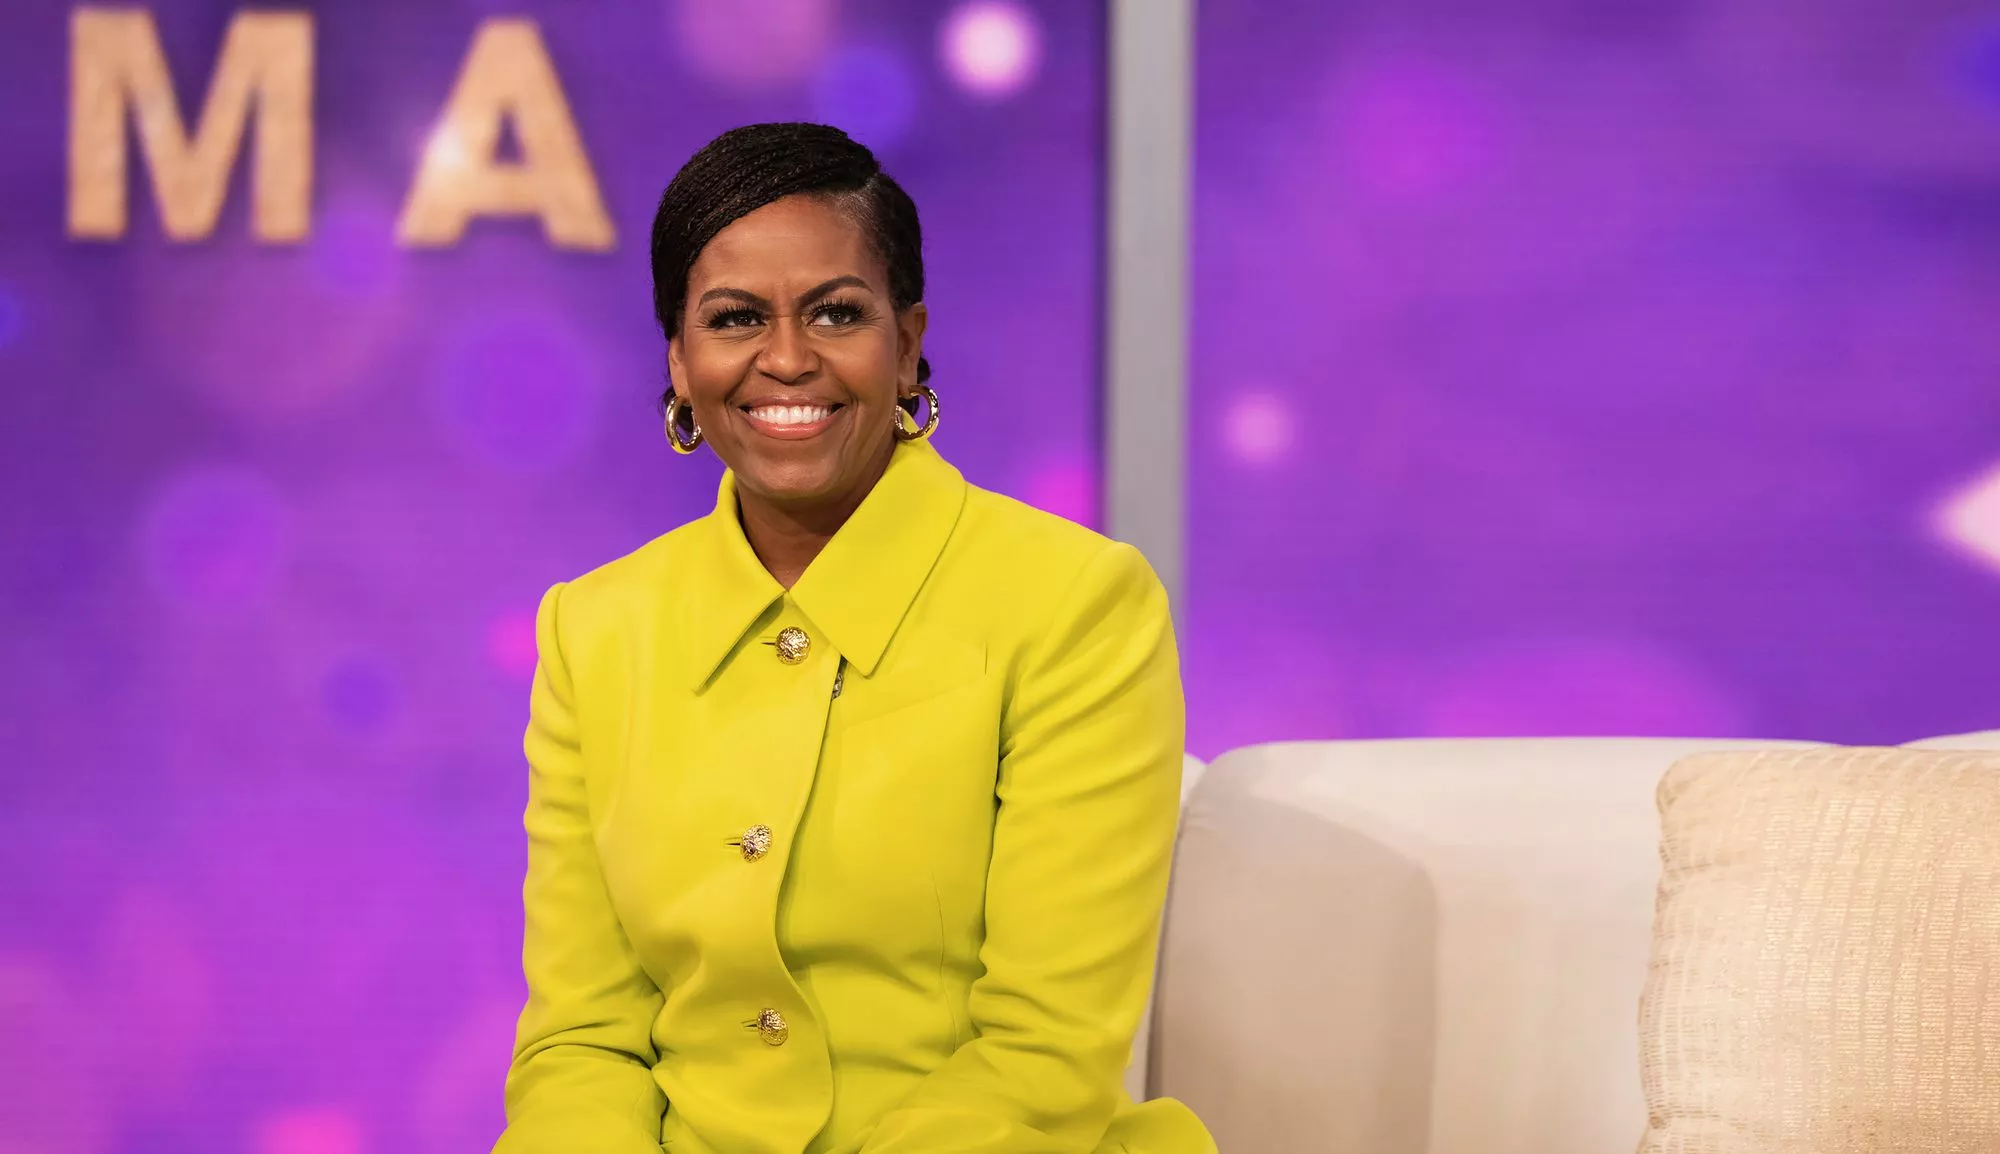 Michelle Obama on juuri julkaissut kirjan, jossa paljastaa, miten hän on oppinut hallitsemaan pelkojaan ja ahdistustaan. Uudesta itsetunnosta kertoo myös afroamerikkalainen kampaus. Michelle haluaa tehdä mustan kulttuurin näkyväksi.